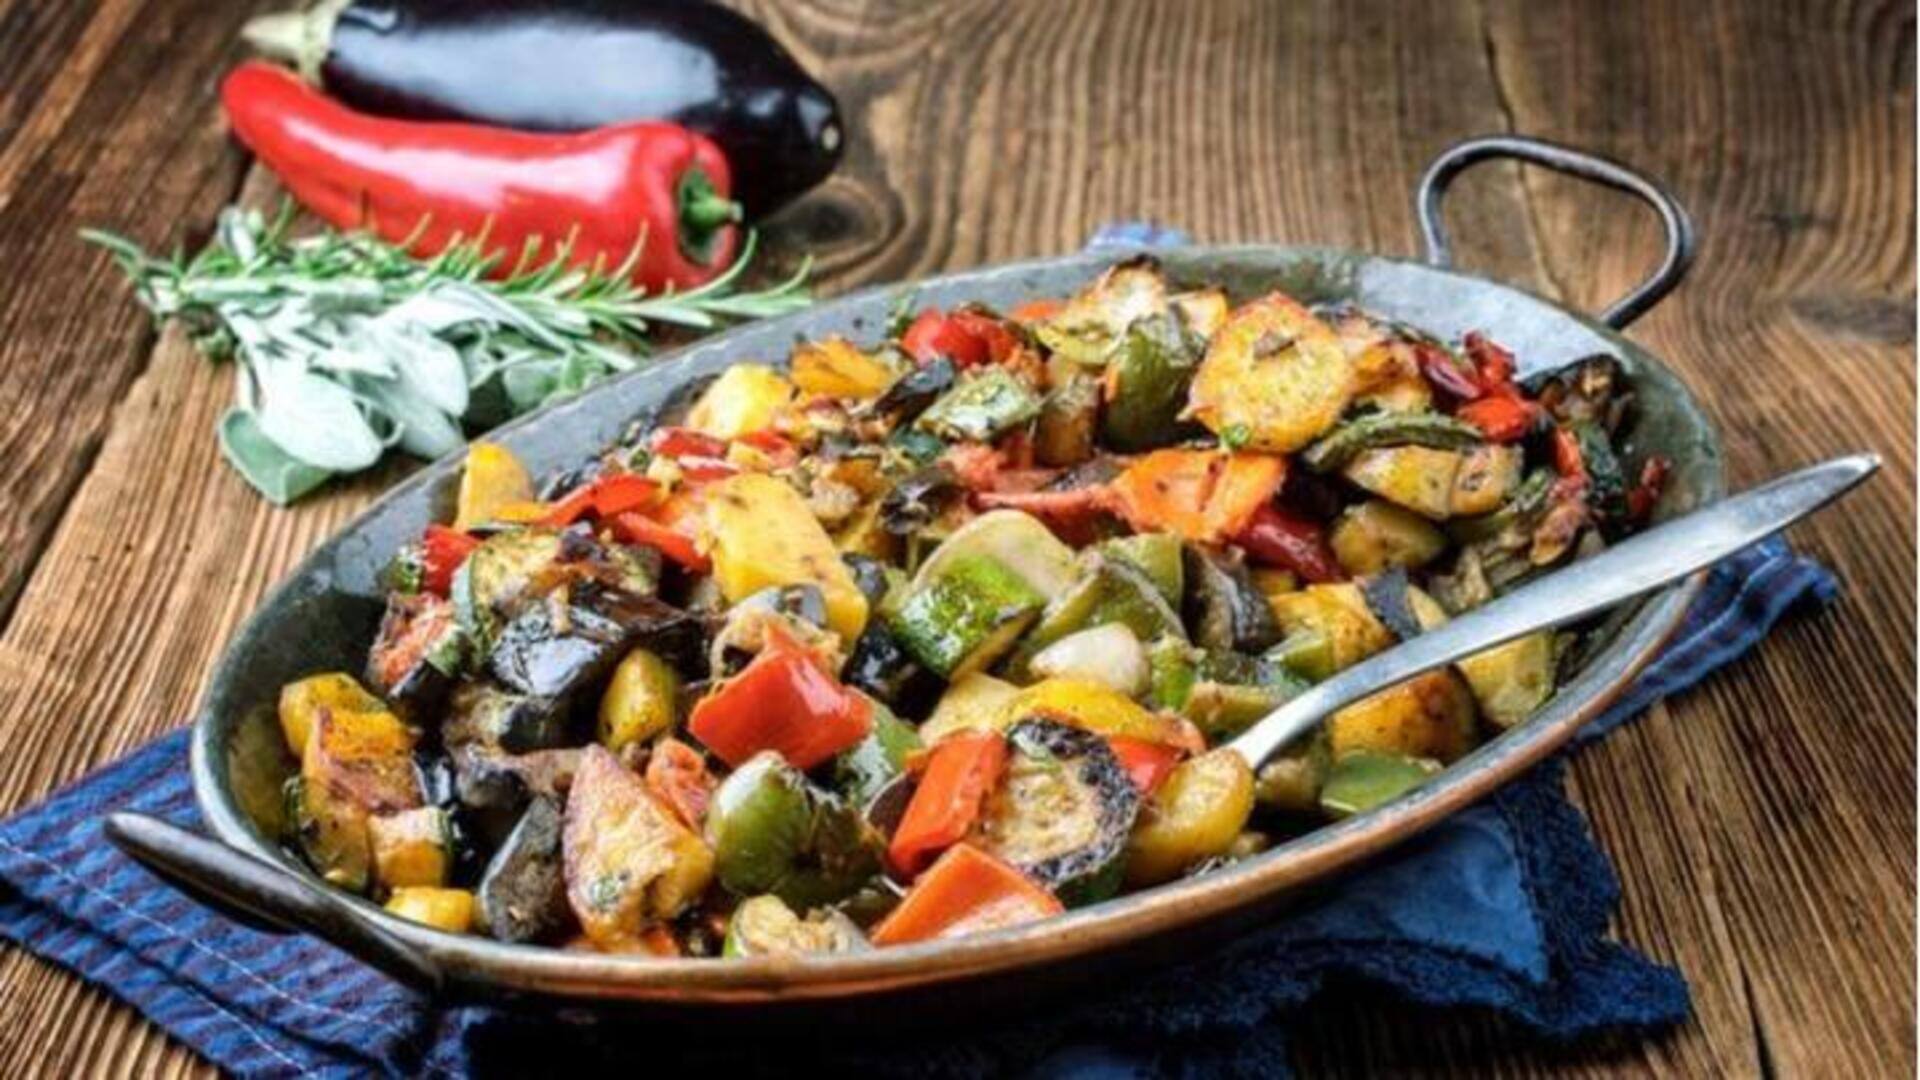 Waktunya resep: Masak Ratatouille, hidangan Prancis yang dibuat dengan sayuran rebus